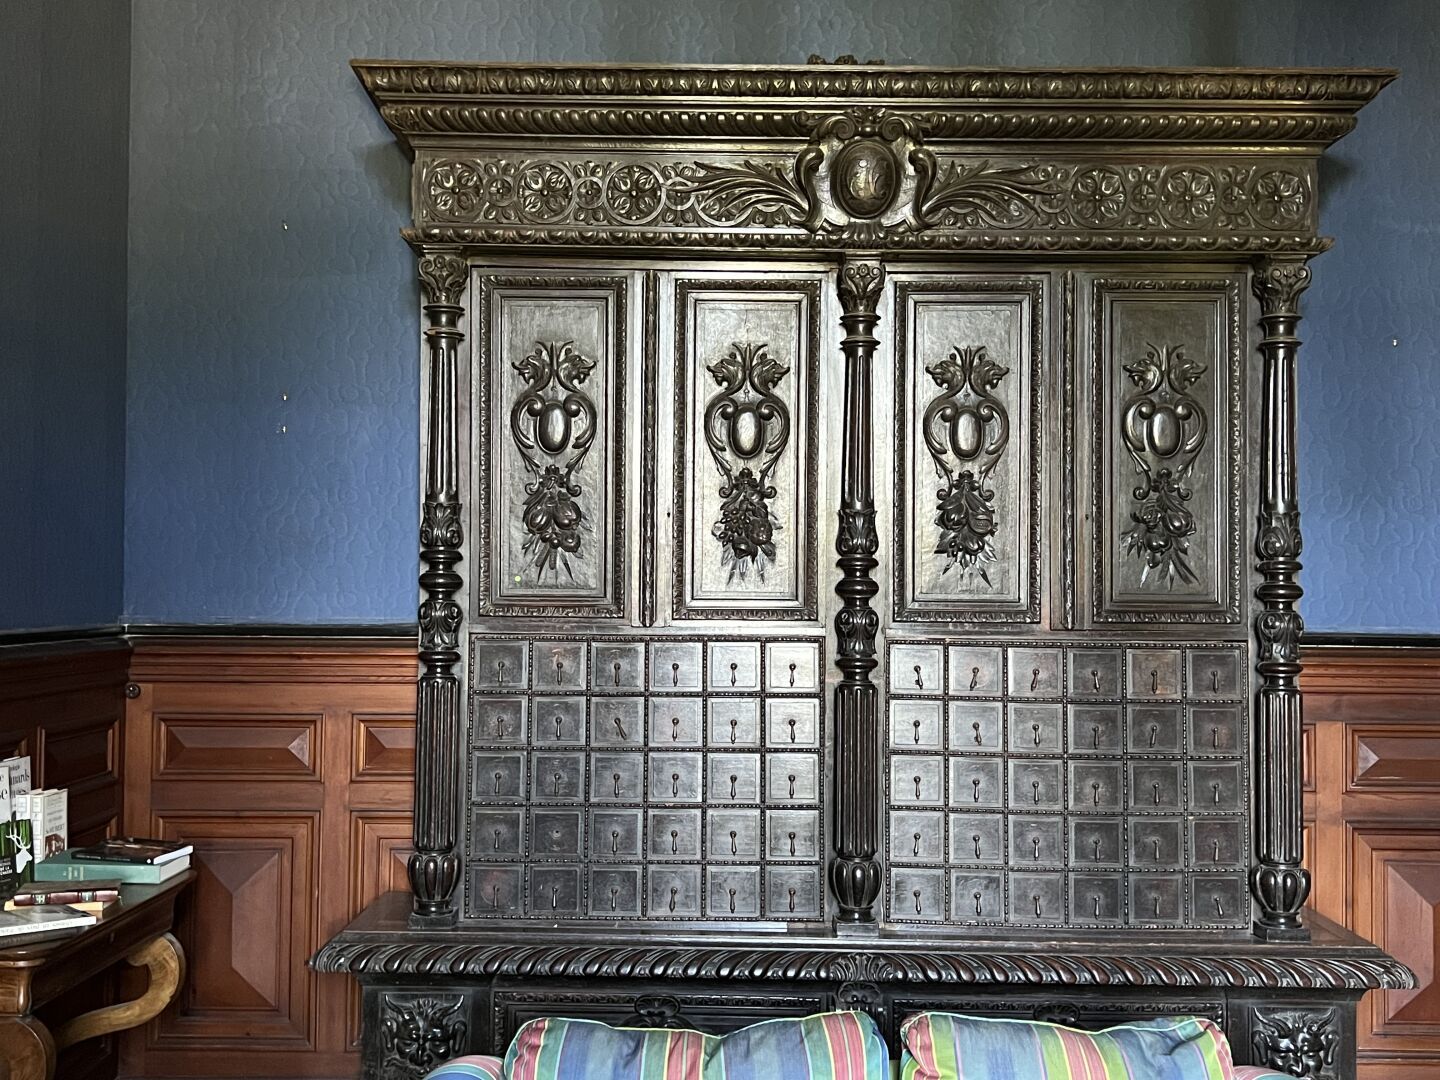 Null 19世纪末文艺复兴风格的黑木药柜。 它有四片叶子和60个抽屉，分五排打开，放在一个凸出的底座上，有雷恩国王的手臂和三个皇冠的花纹（BRIAU收藏）。
&hellip;